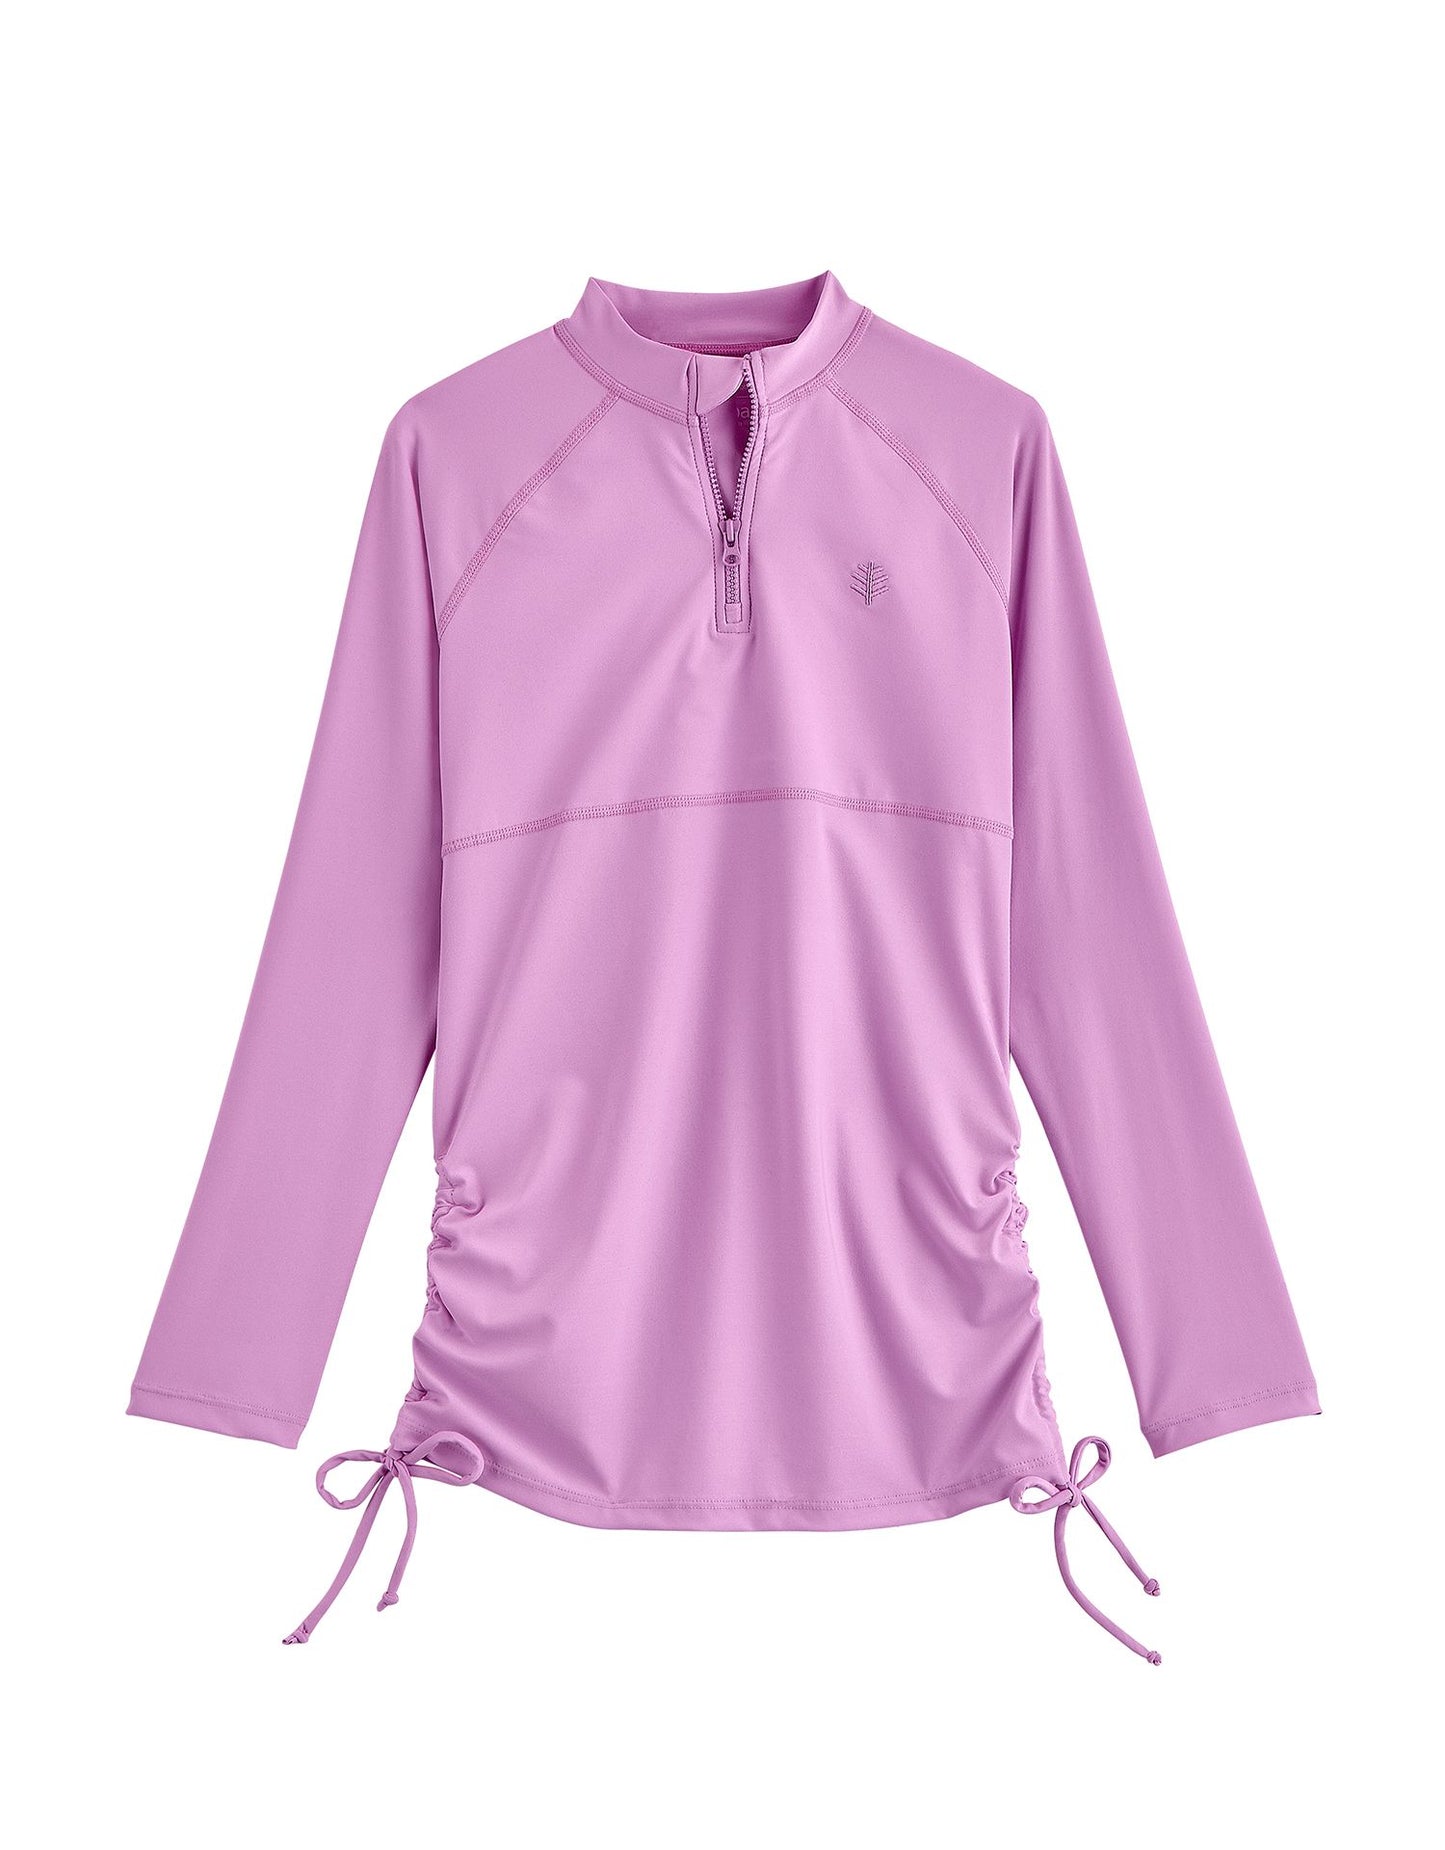 Coolibar - UV Zwemshirt voor meisjes - Longsleeve - Lawai Ruche - Lavendel